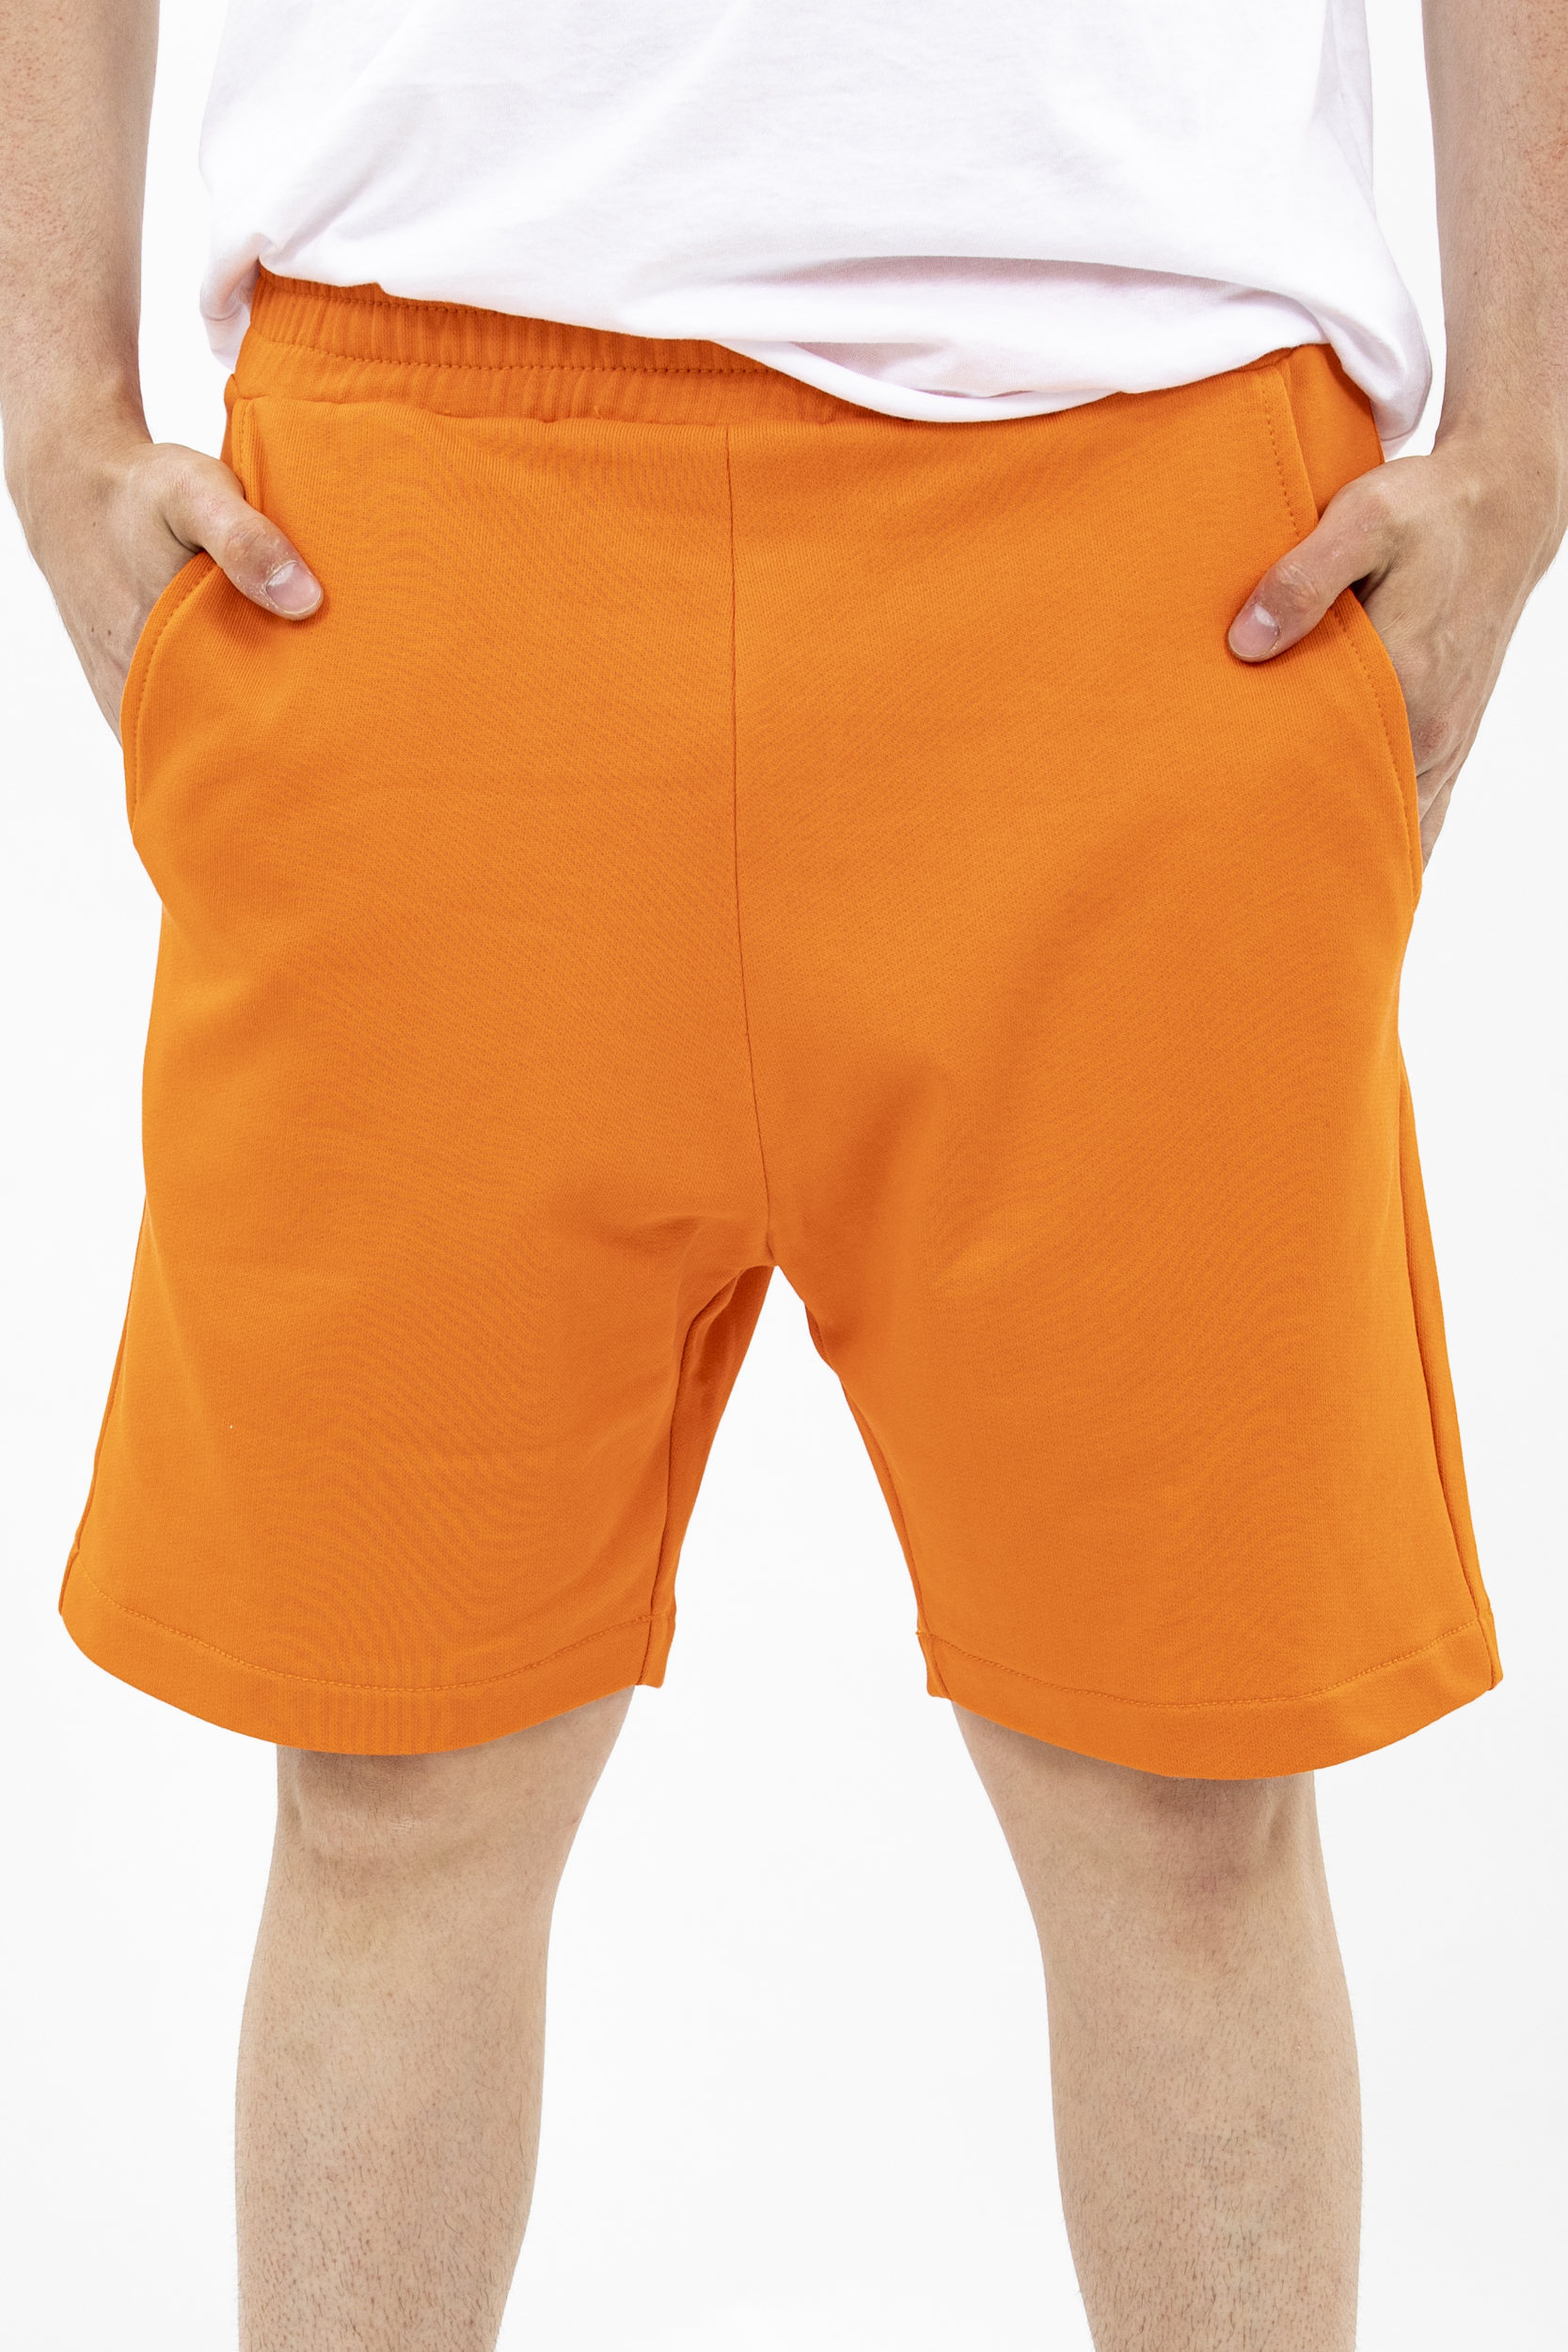 Pantaloni short orange cotton